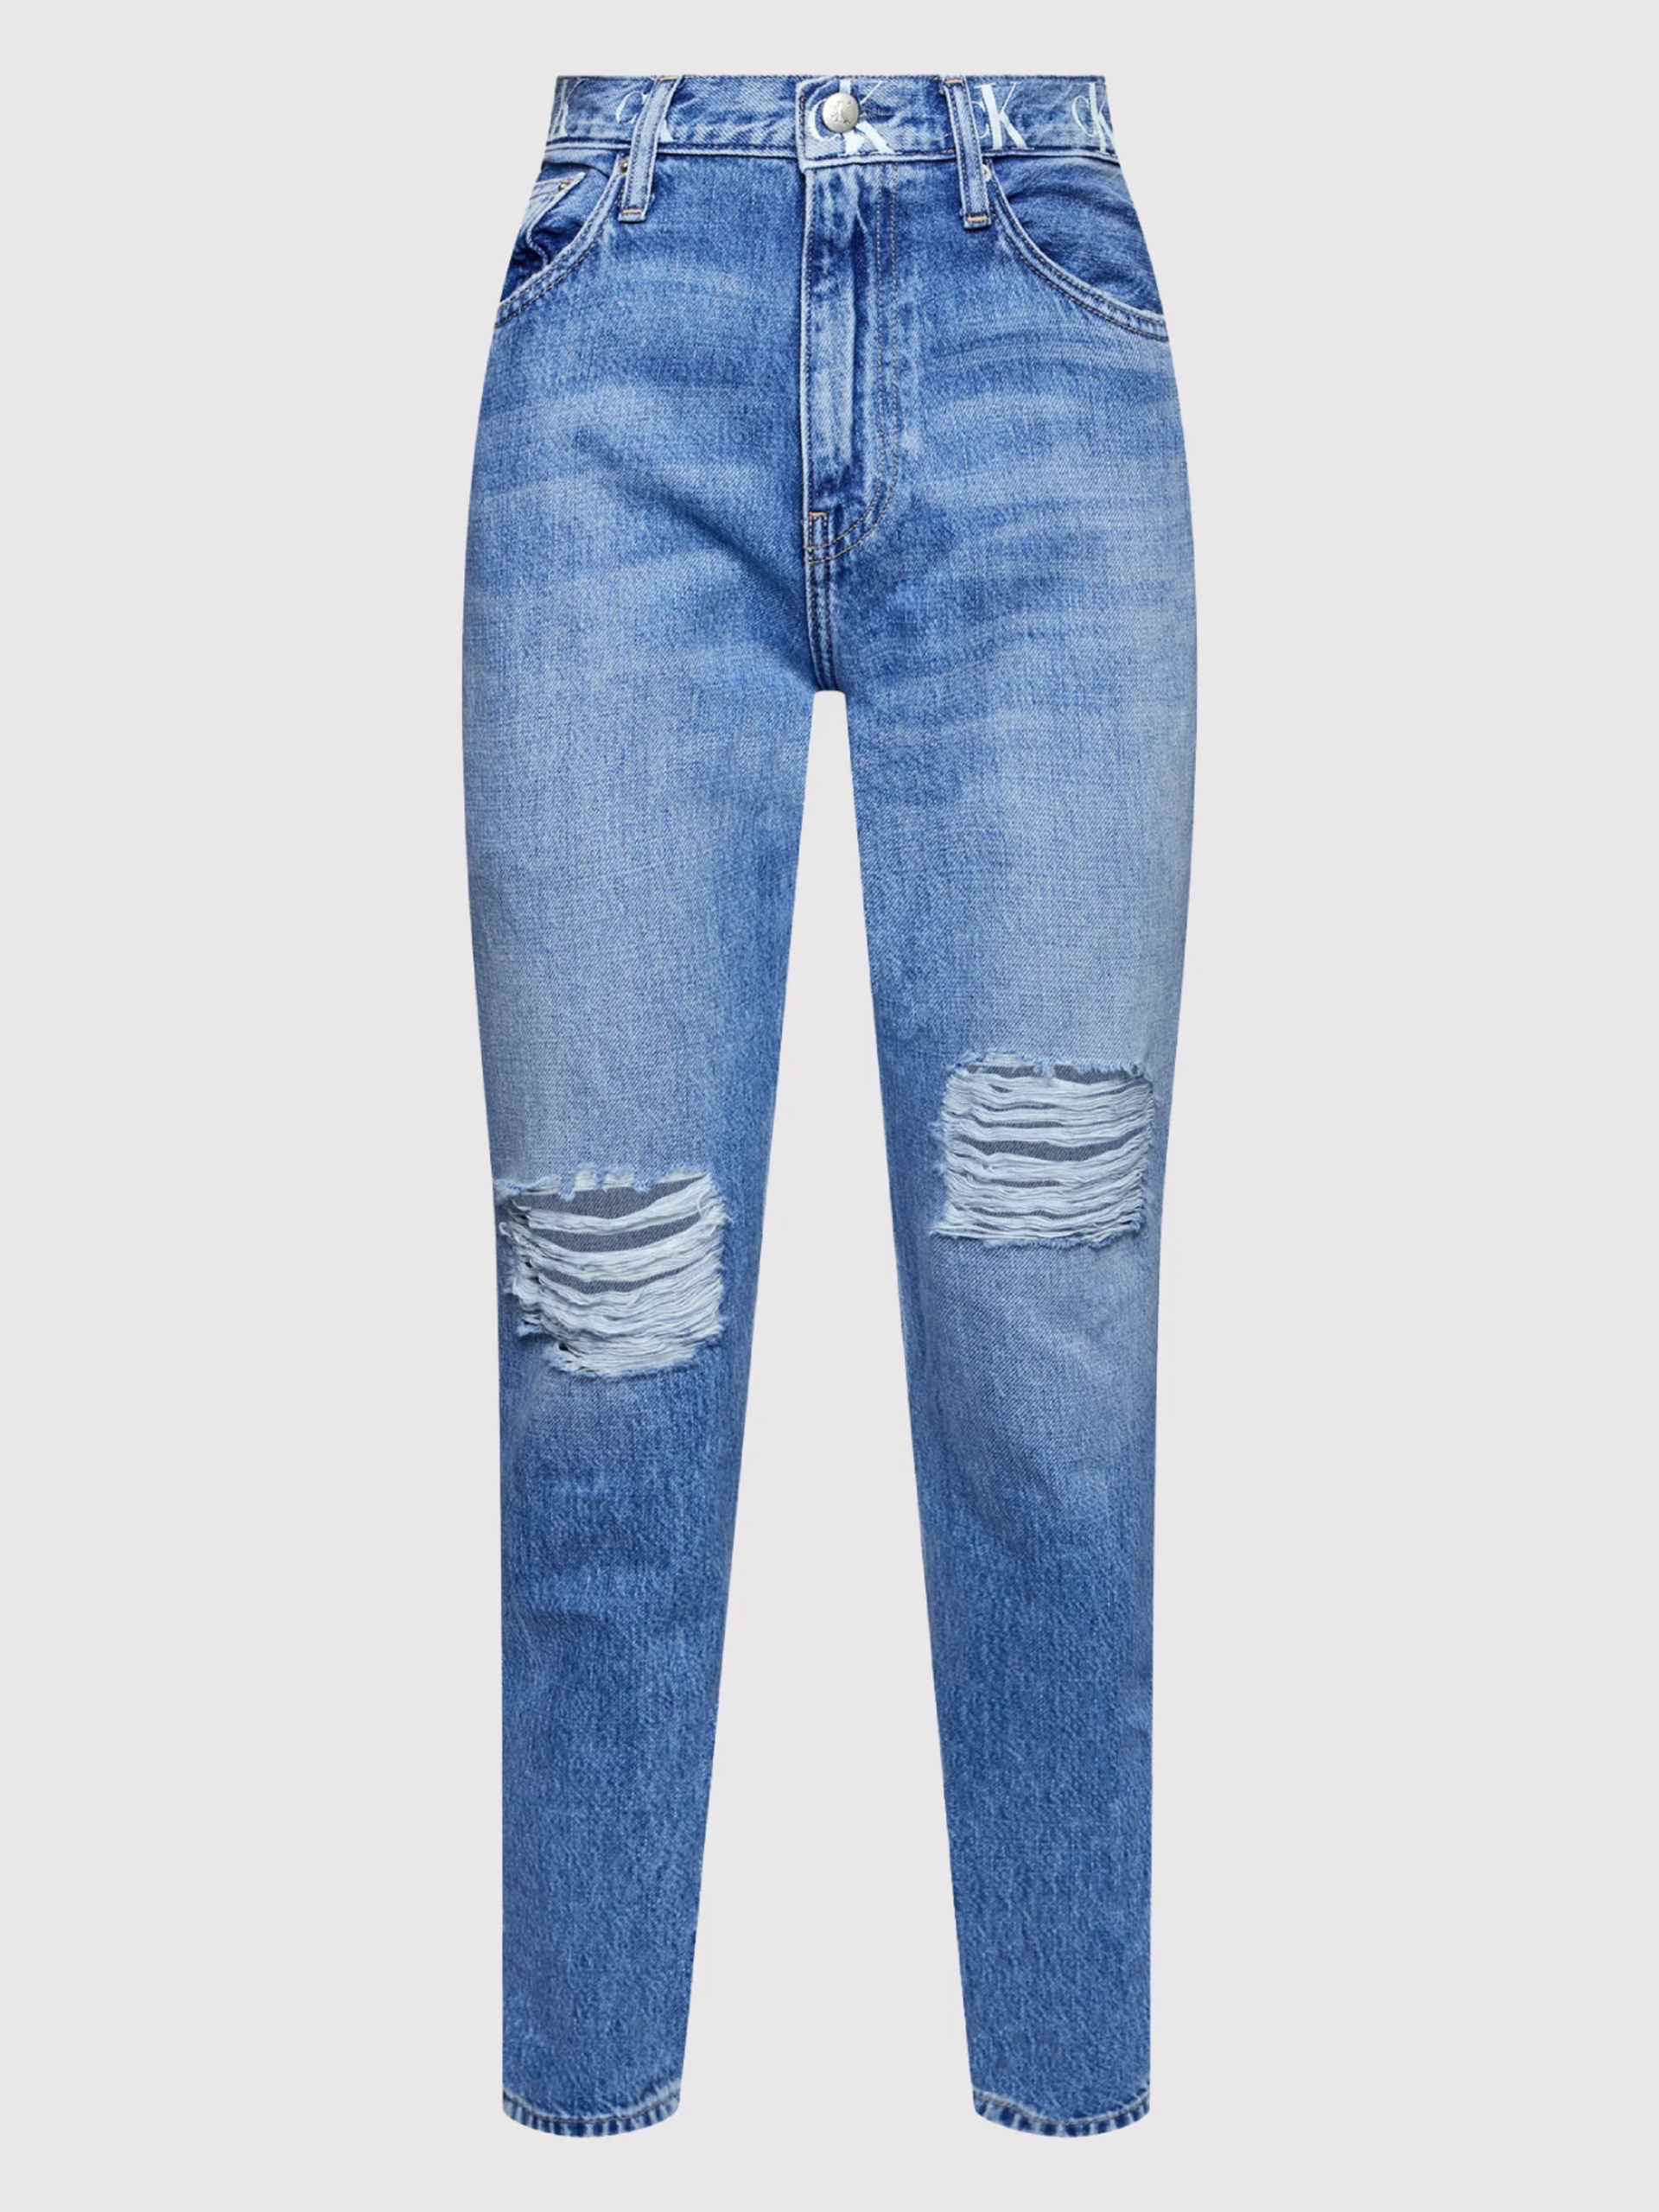 Calvin Klein dámske modré džínsy - 25/NI (1A4)